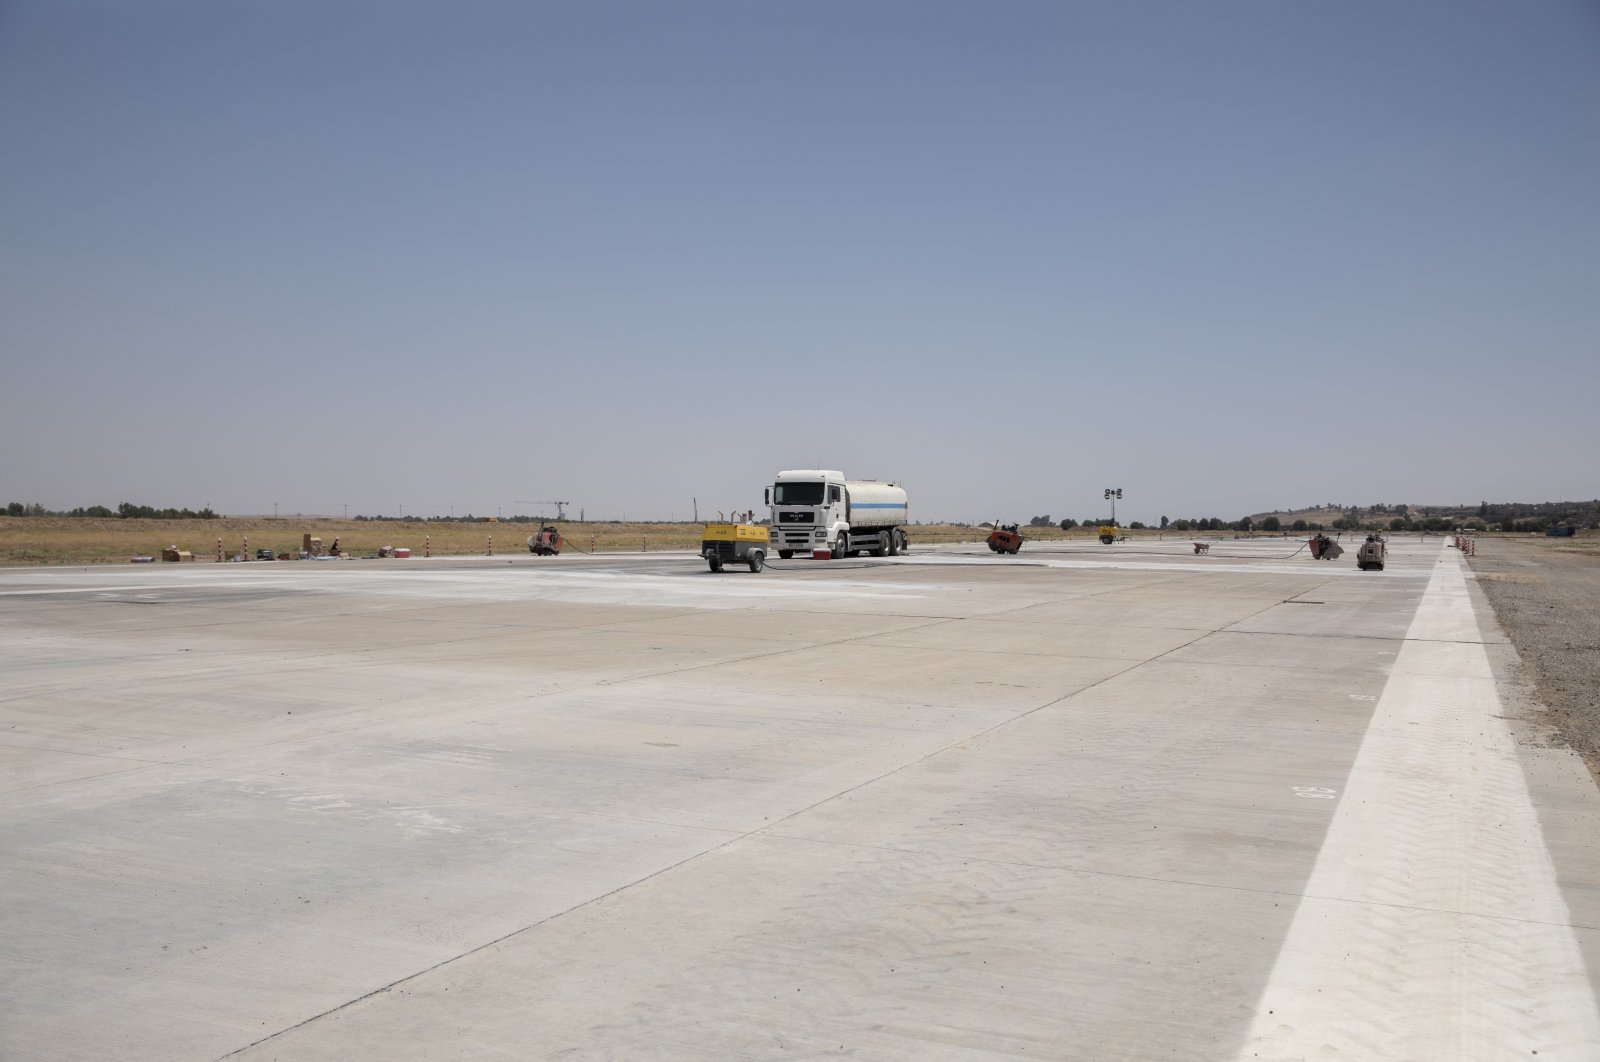 Diperbaiki oleh perusahaan Turki, bandara Mosul akan memulai penerbangan sipil tahun depan